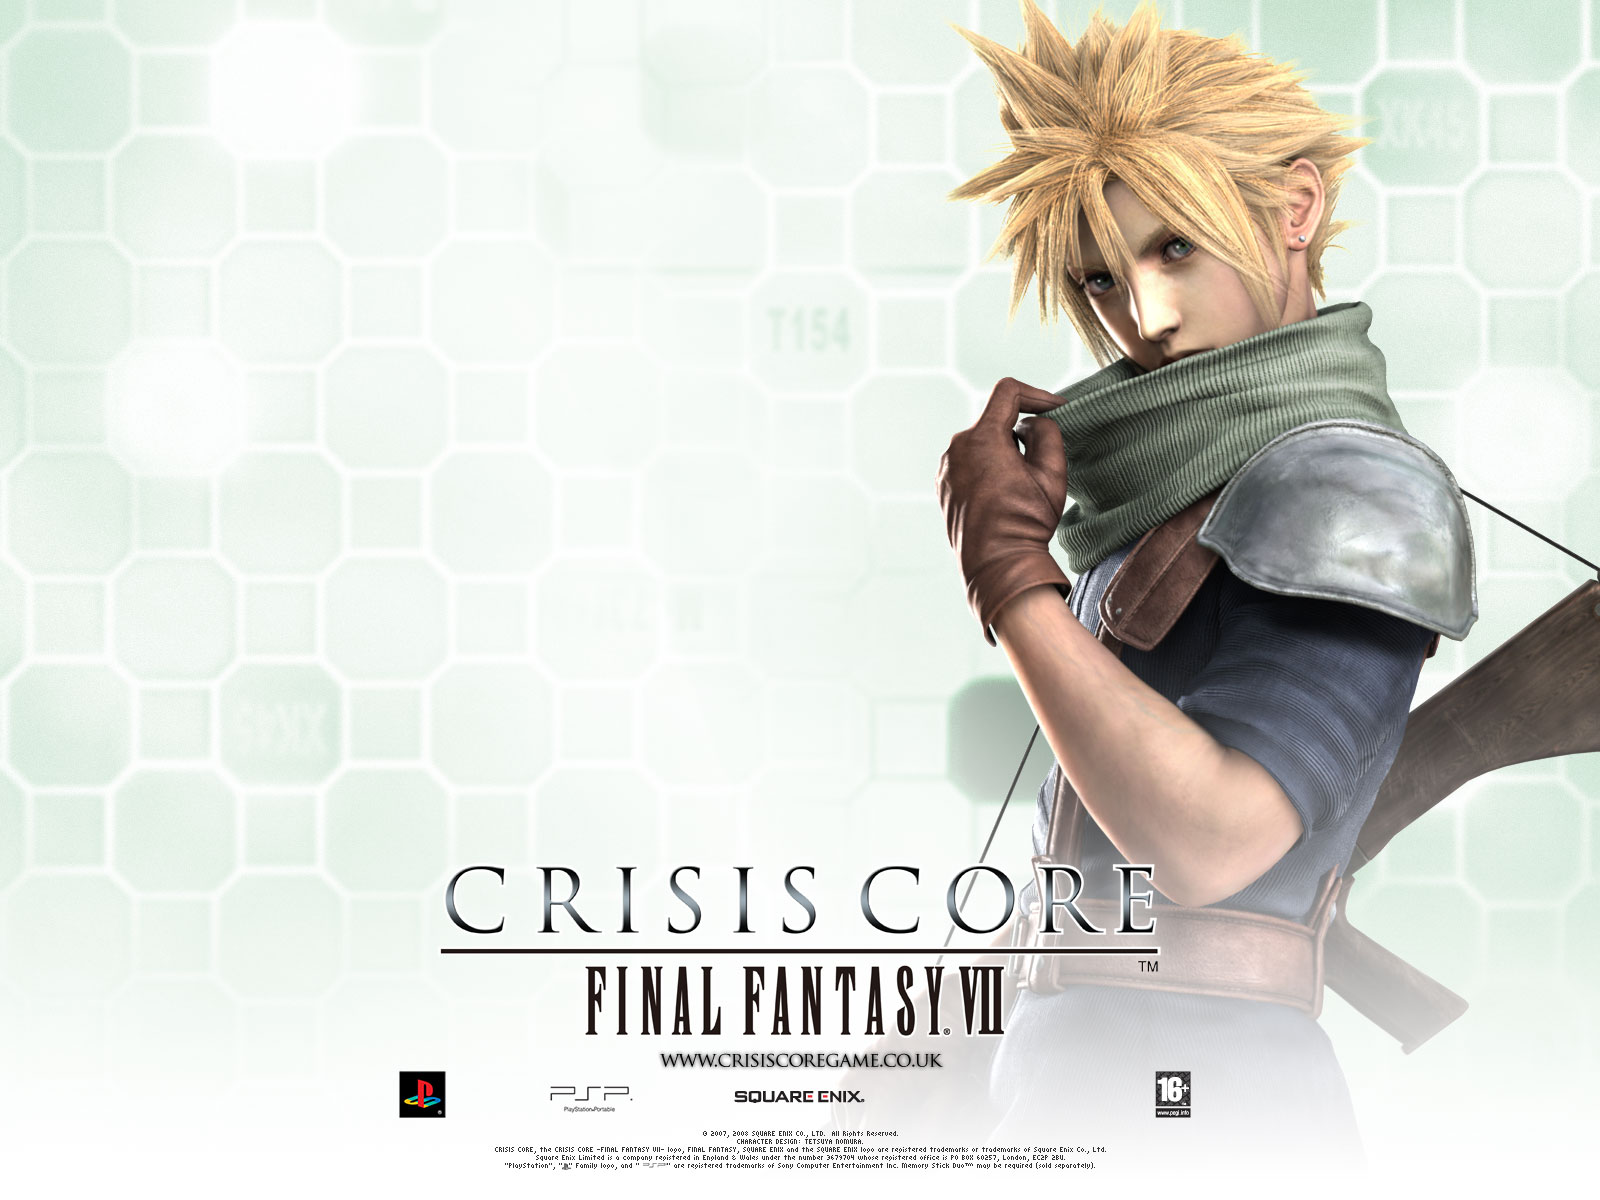 Fondos de Pantalla Final Fantasy Final Fantasy VII: Crisis Core Juegos  descargar imagenes